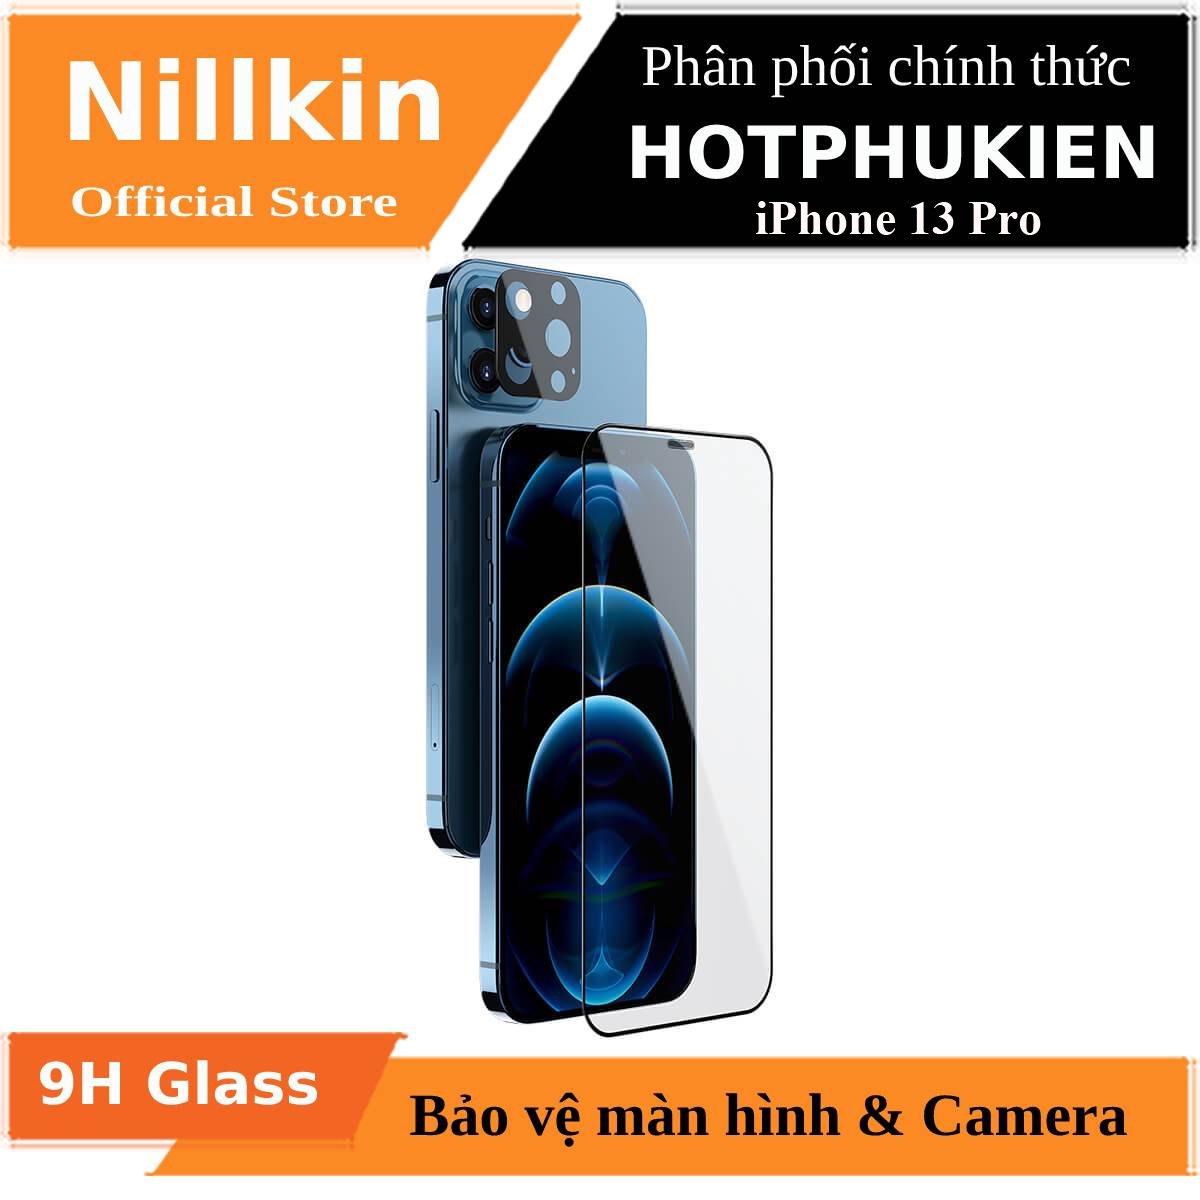 Bộ miếng dán kính cường lực và cường lực bảo vệ Camera cho iPhone 13 Pro hiệu Nillkin Invisible Guard